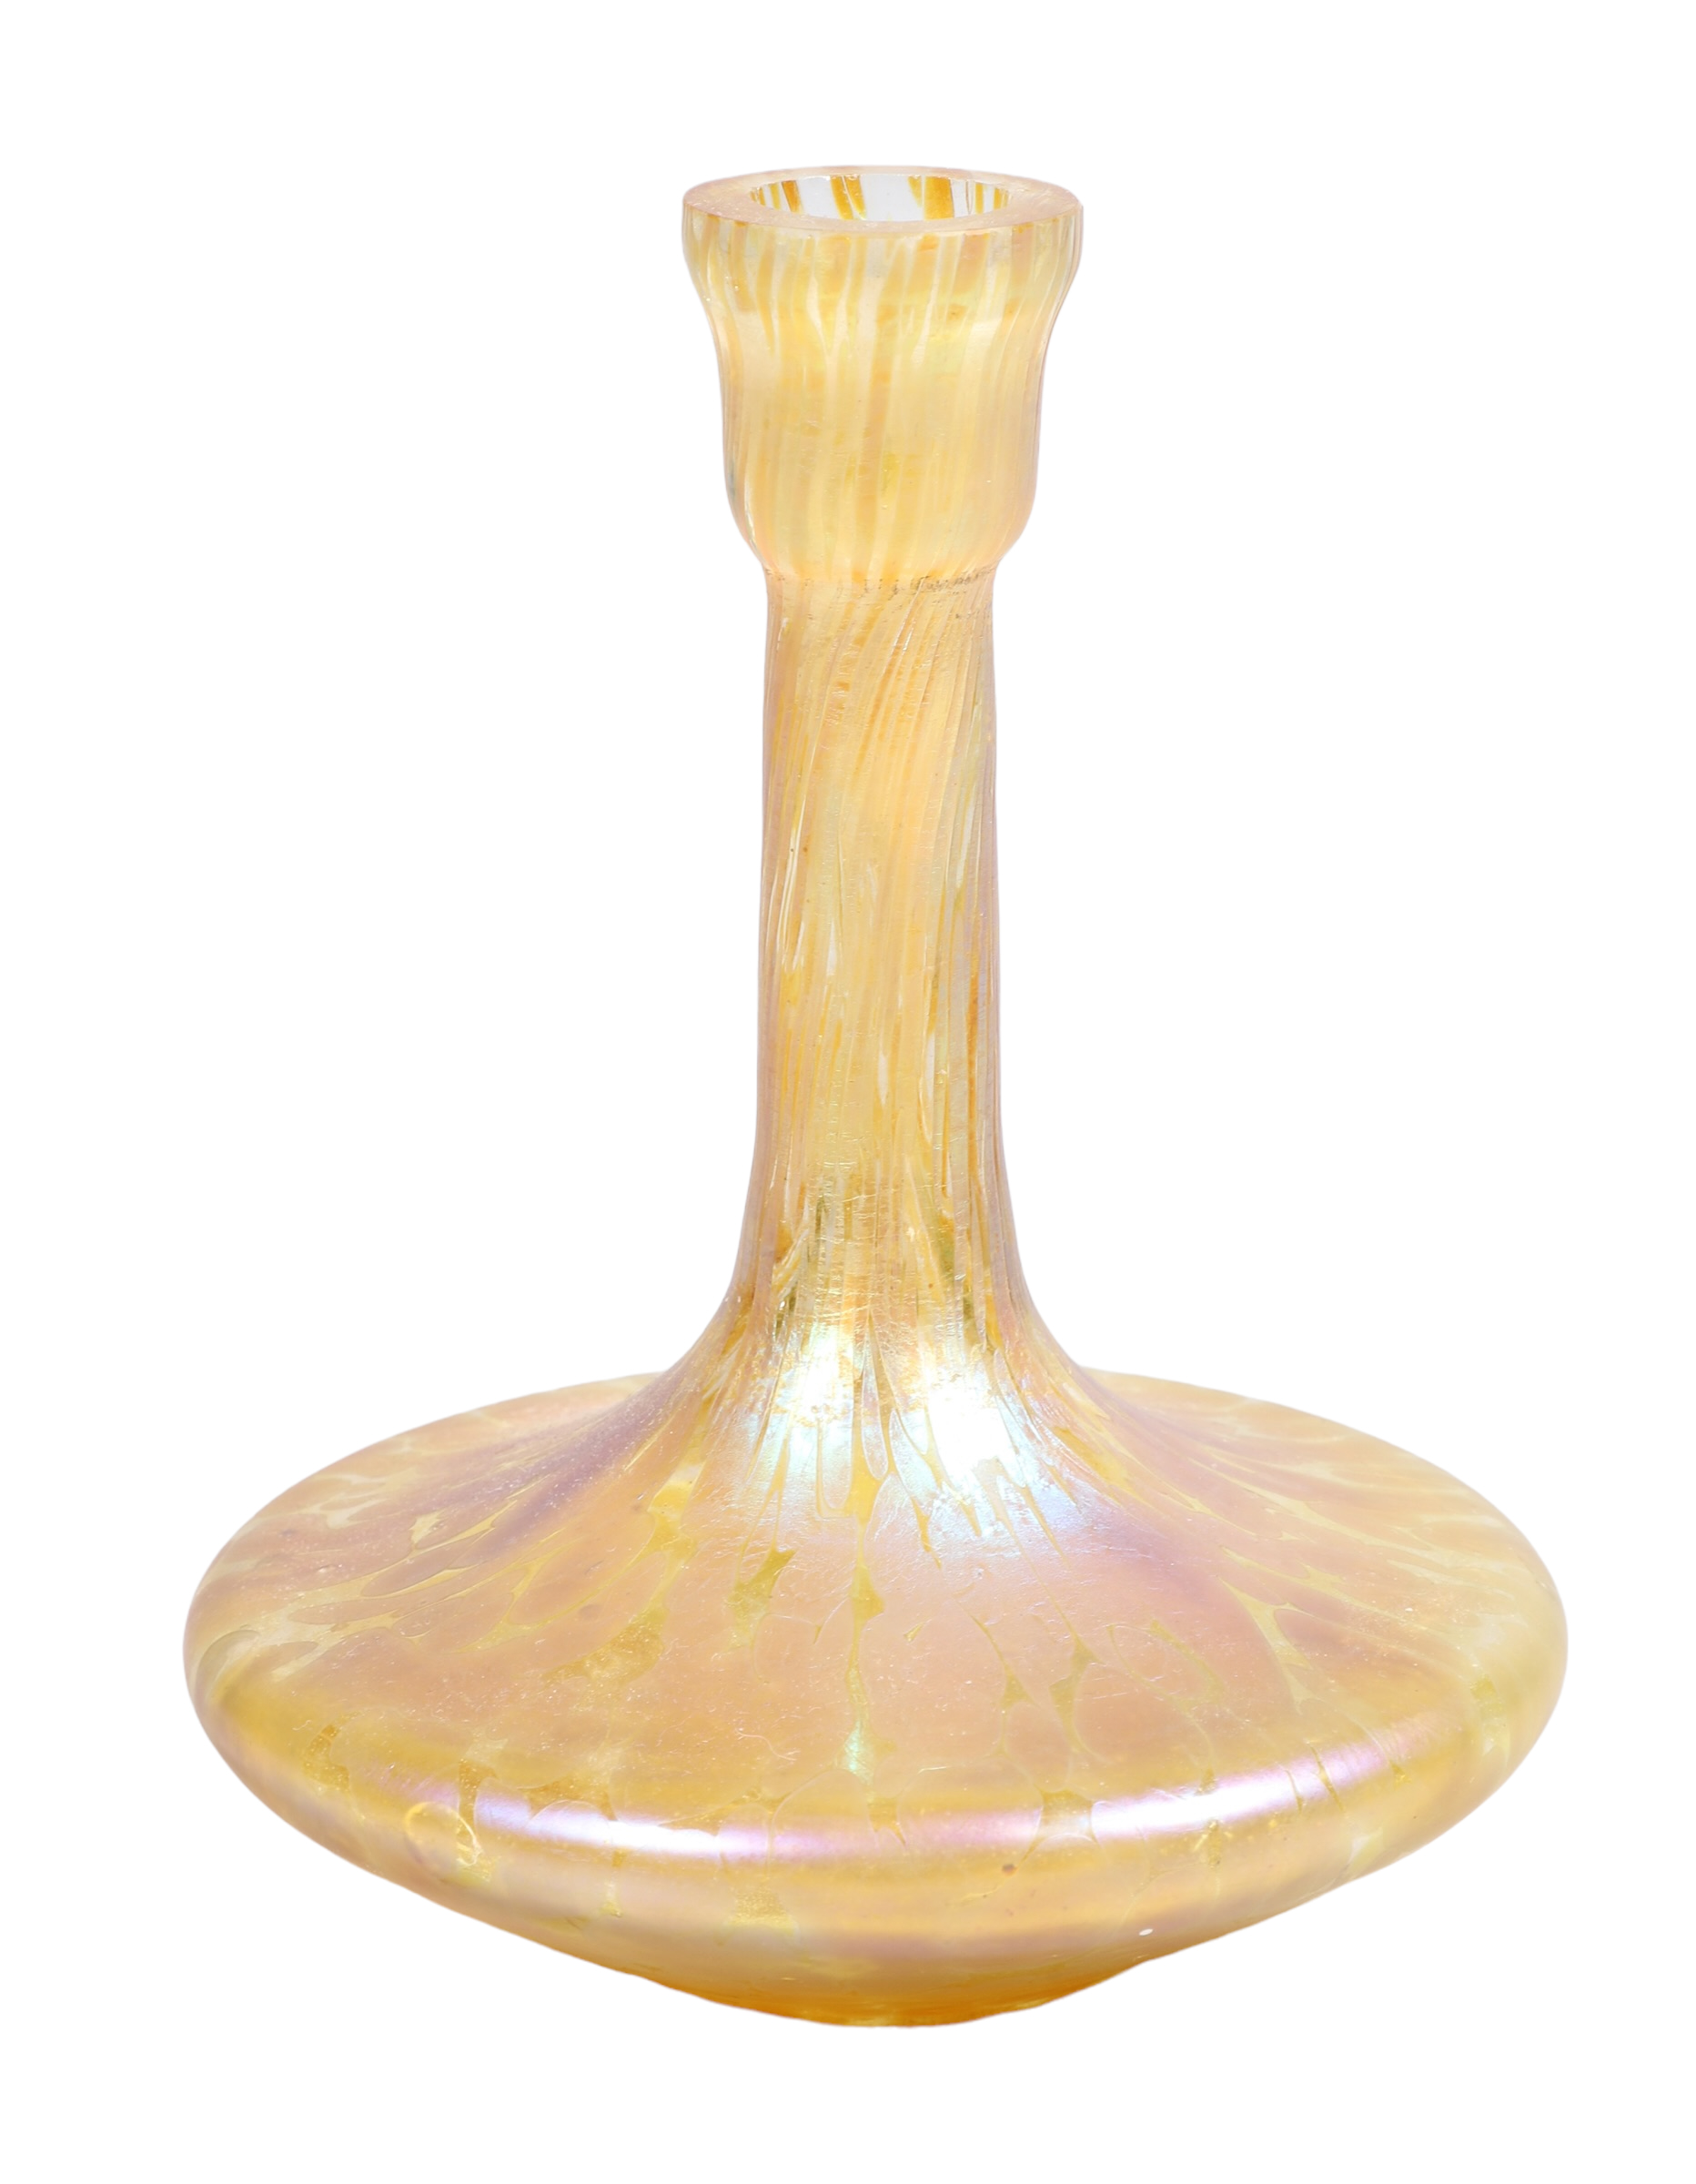 Loetz type oil spot vase 5 5 8 H  317ebb